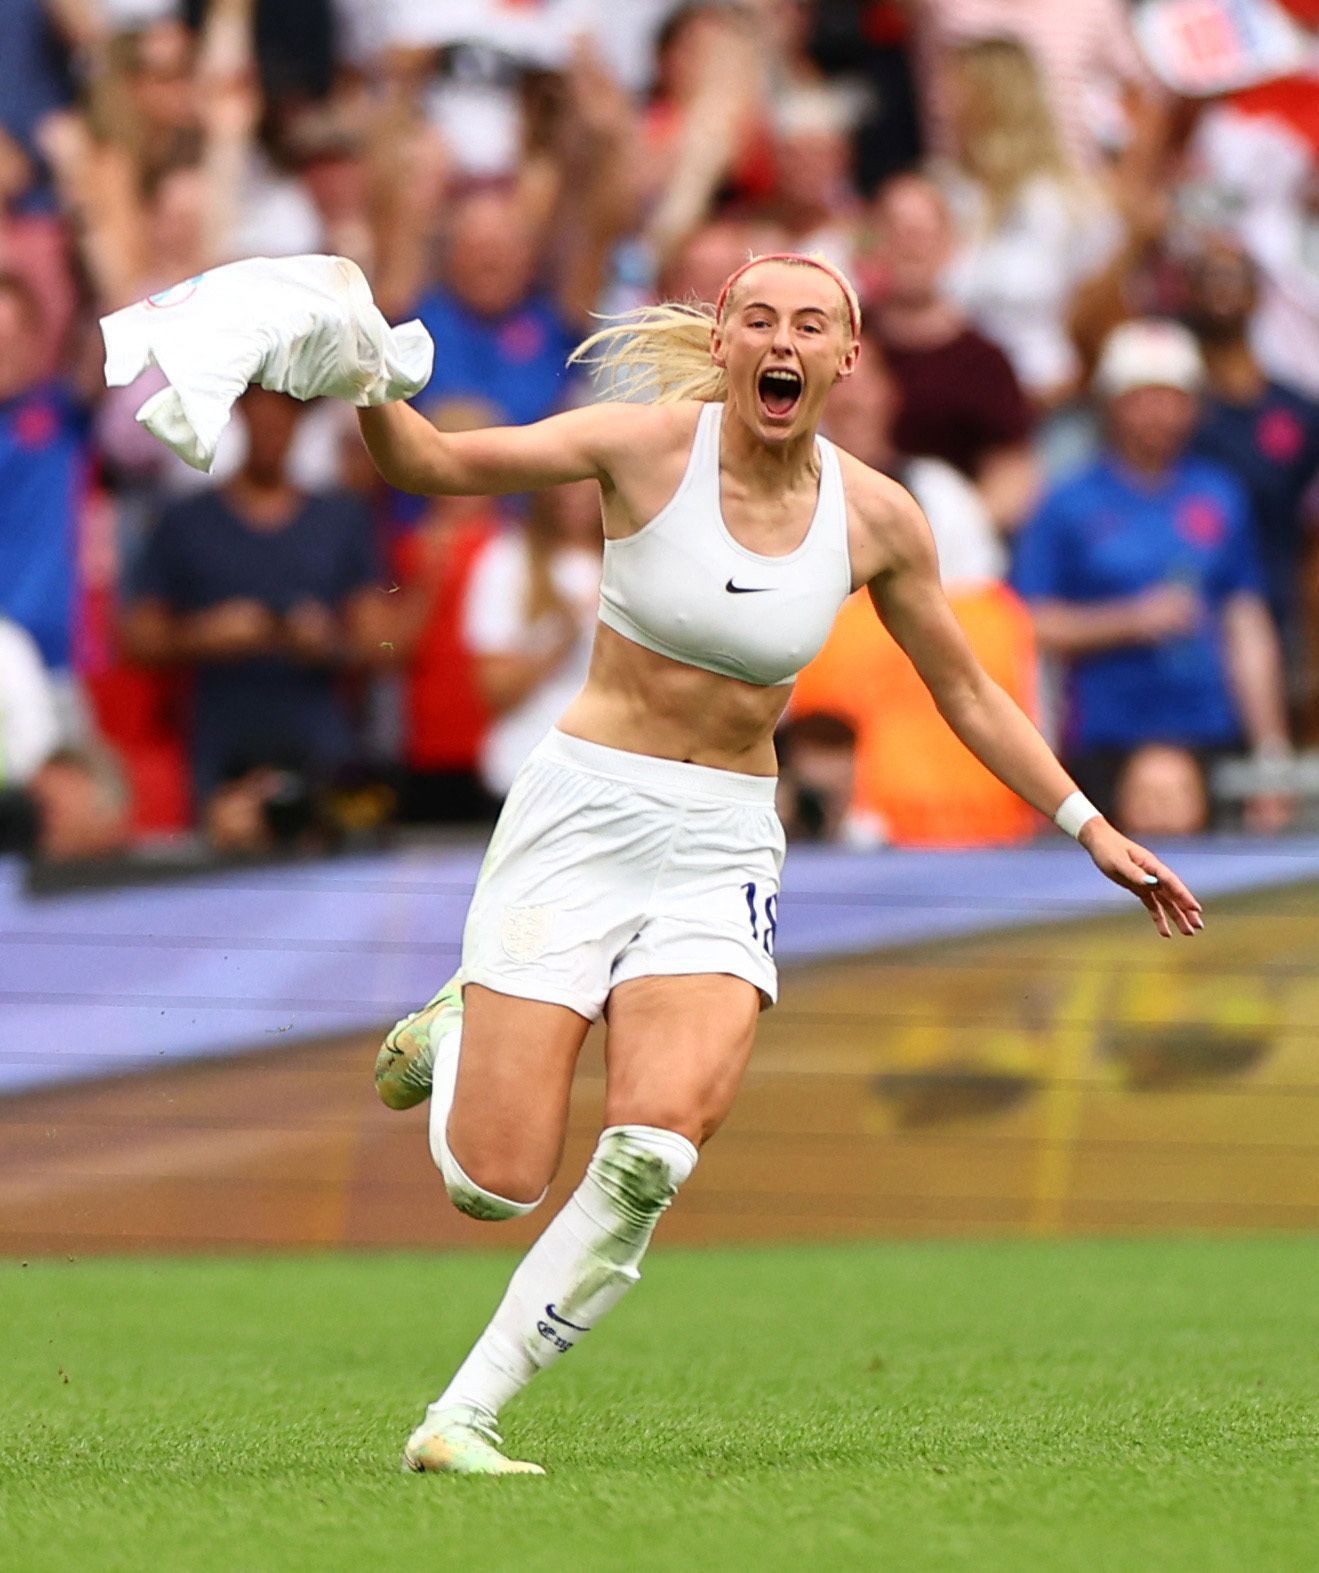 Anglie - Německo, finále ME ve fotbale žen